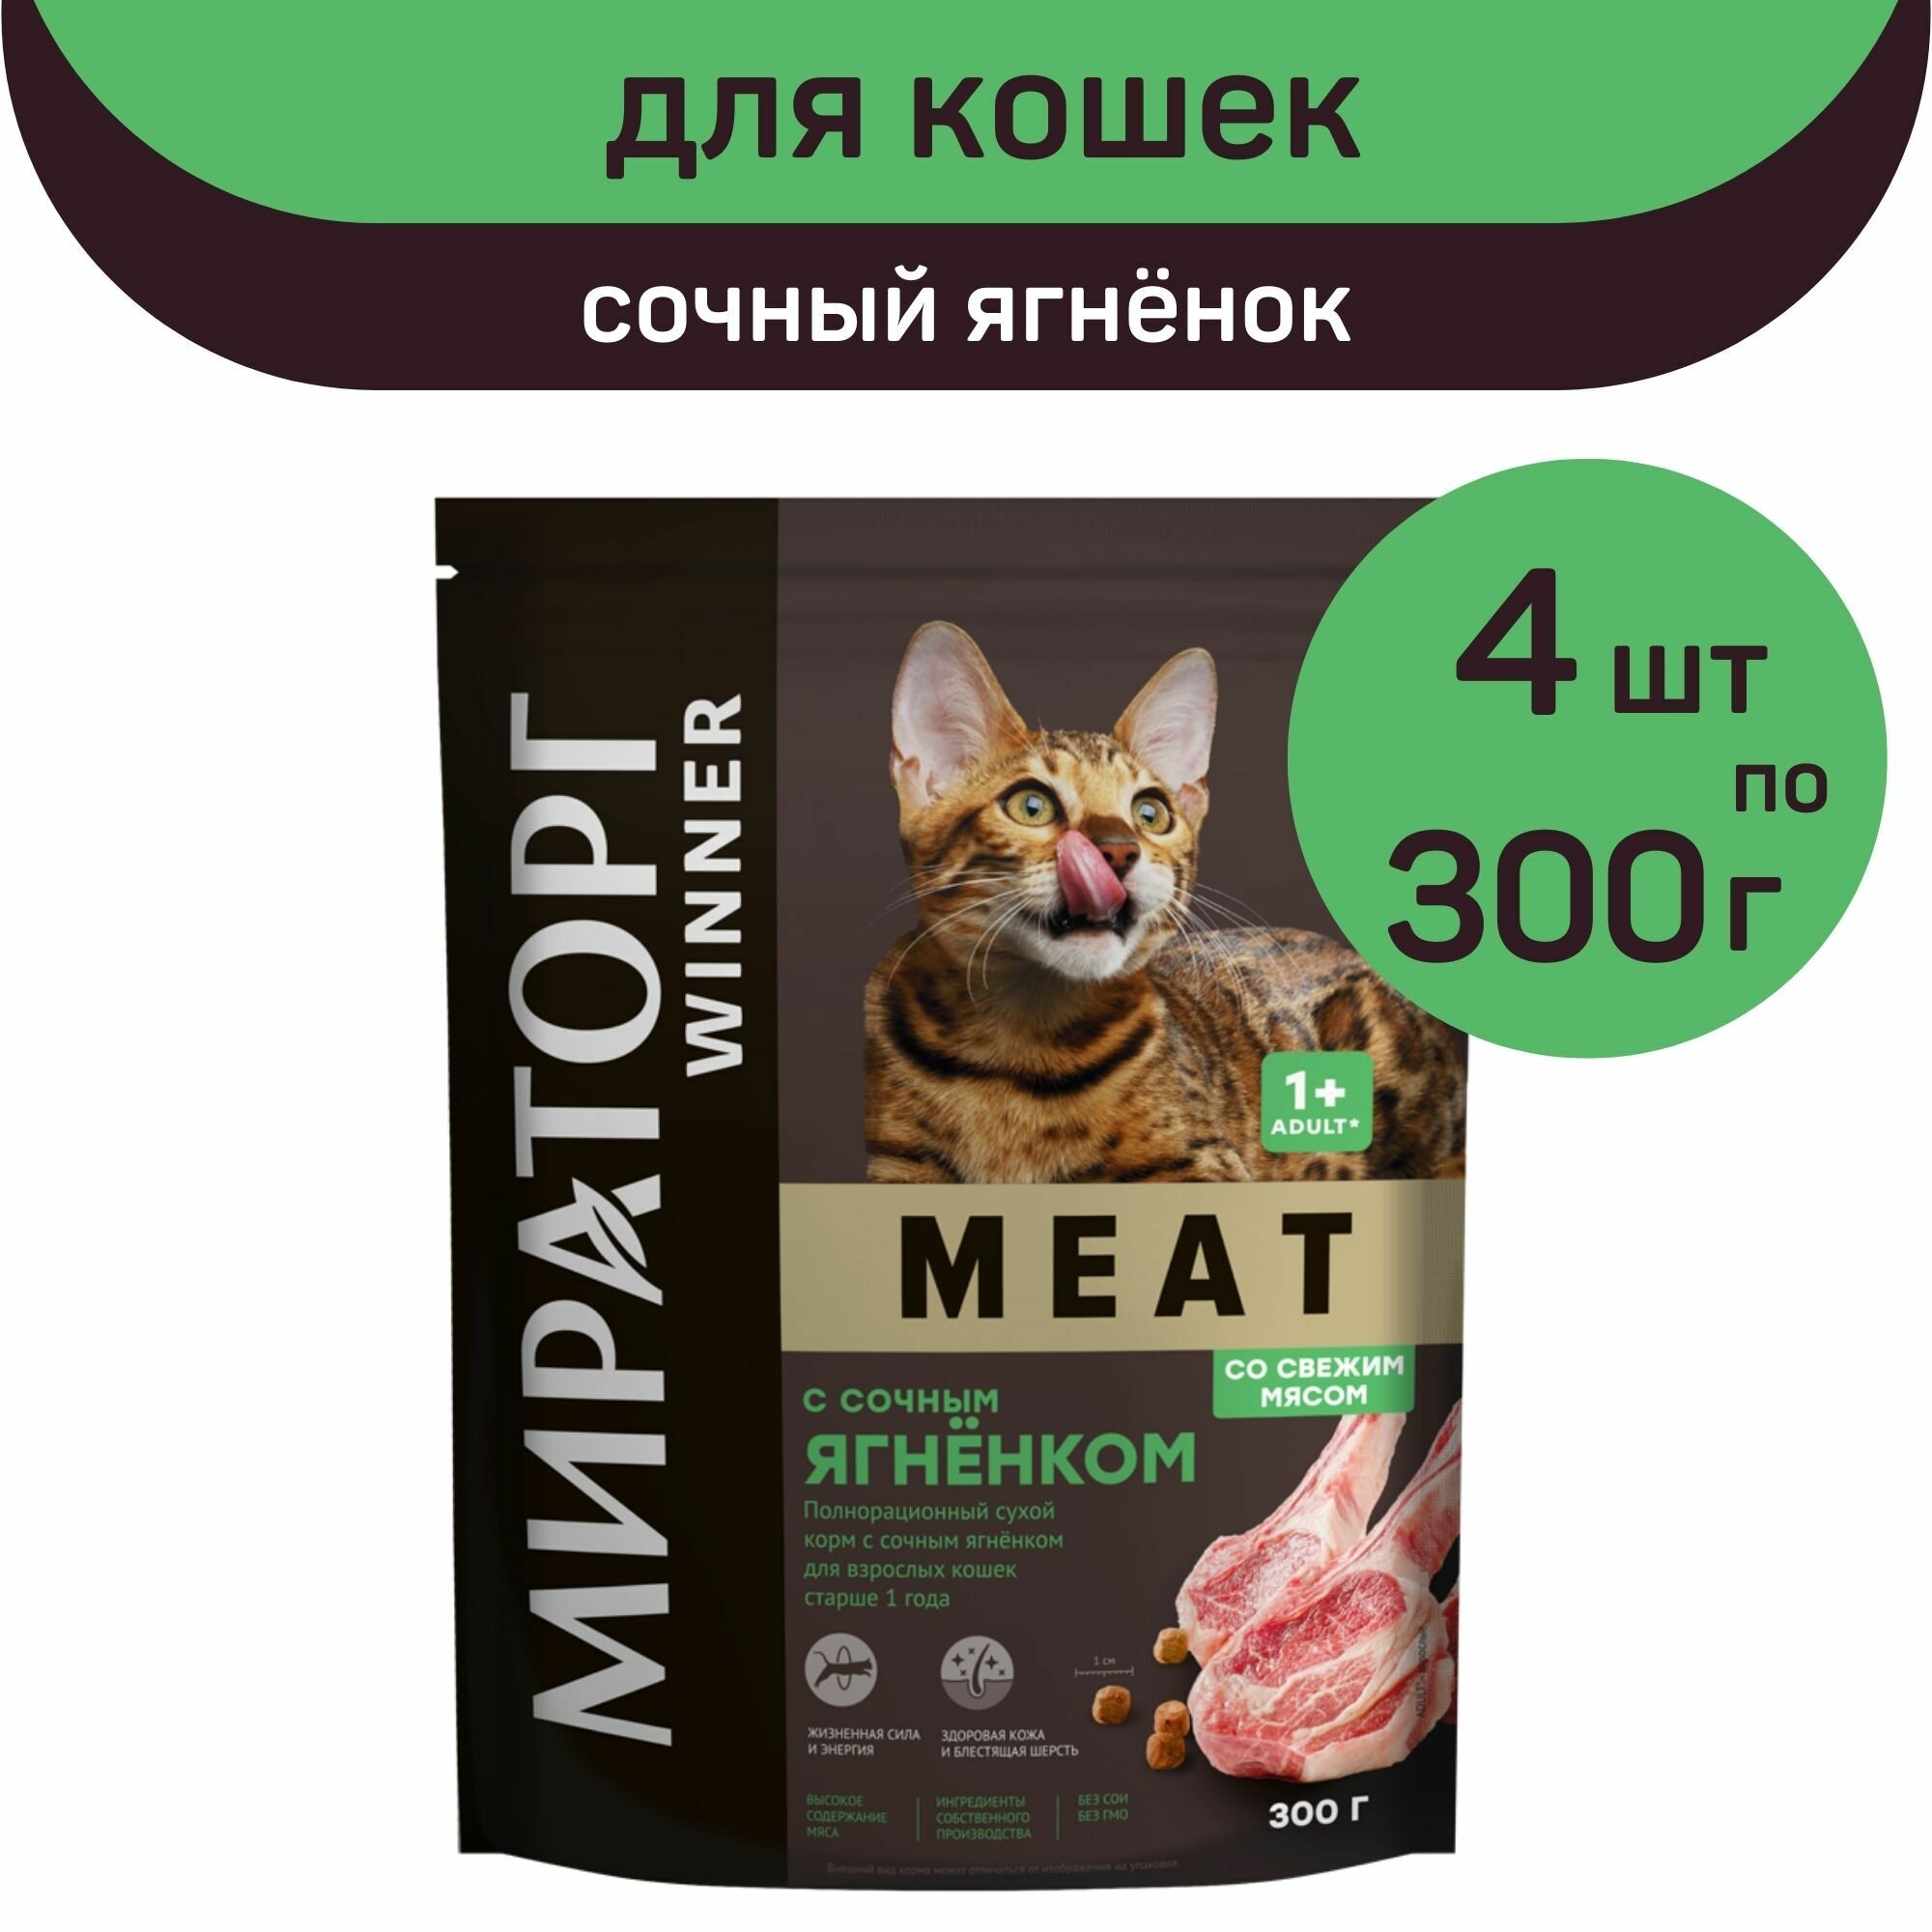 Полнорационный сухой корм Мираторг MEAT, сочный ягнёнок, 4 упаковки х 300 г, для взрослых кошек, старше 1 года - фотография № 1